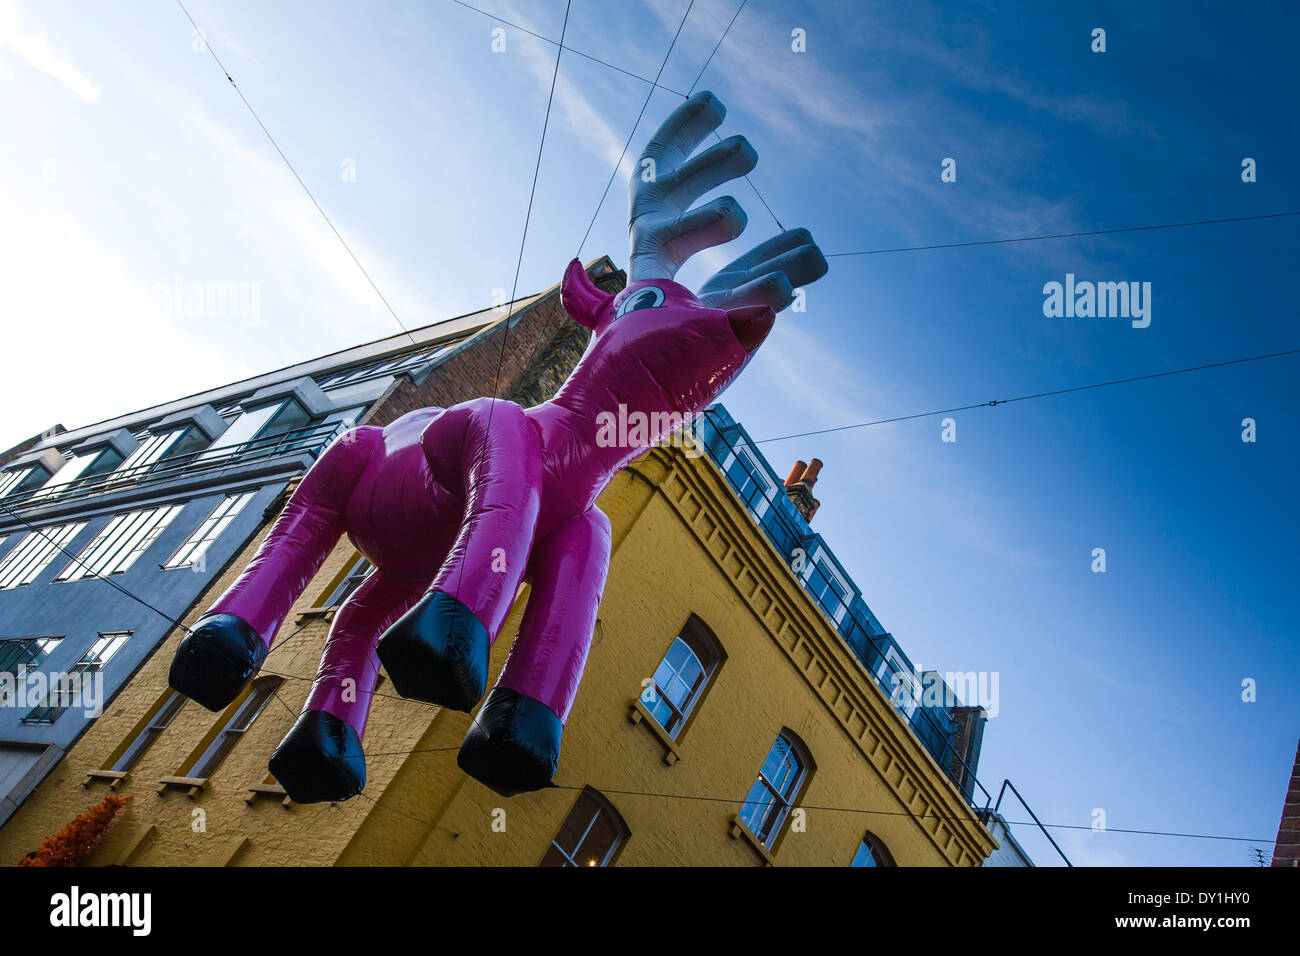 Eine riesige aufblasbare rosa Rentier Ballon ist Teil der Straße Weihnachtsdekorationen in der Nähe von Carnaby Street, Soho, London. Stockfoto